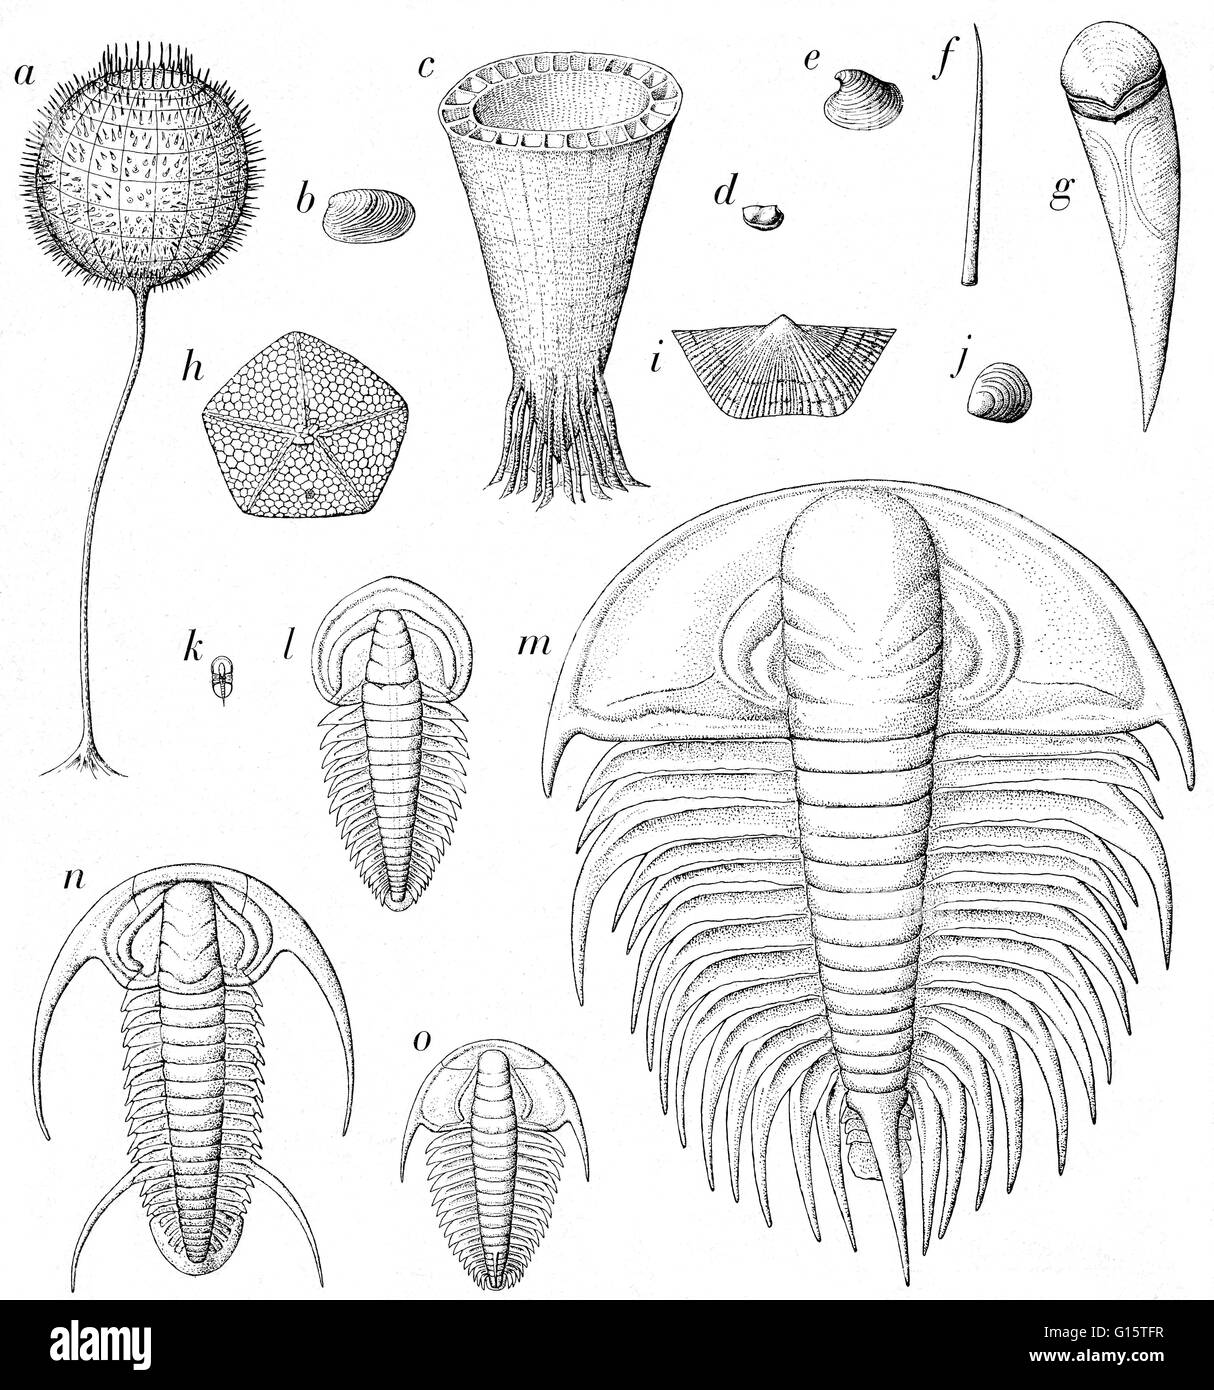 Titulado: registro fósil del período cámbrico temprano. Algunos están diseñados casi de tamaño natural. Entre ellos se encuentran los artrópodos (D Y K - OH), moluscos (B, E y quizás, F y G), braquiópodos (I, J), equinodermos (H), las esponjas (A), y otros organismos tales como (C) que probabl Foto de stock